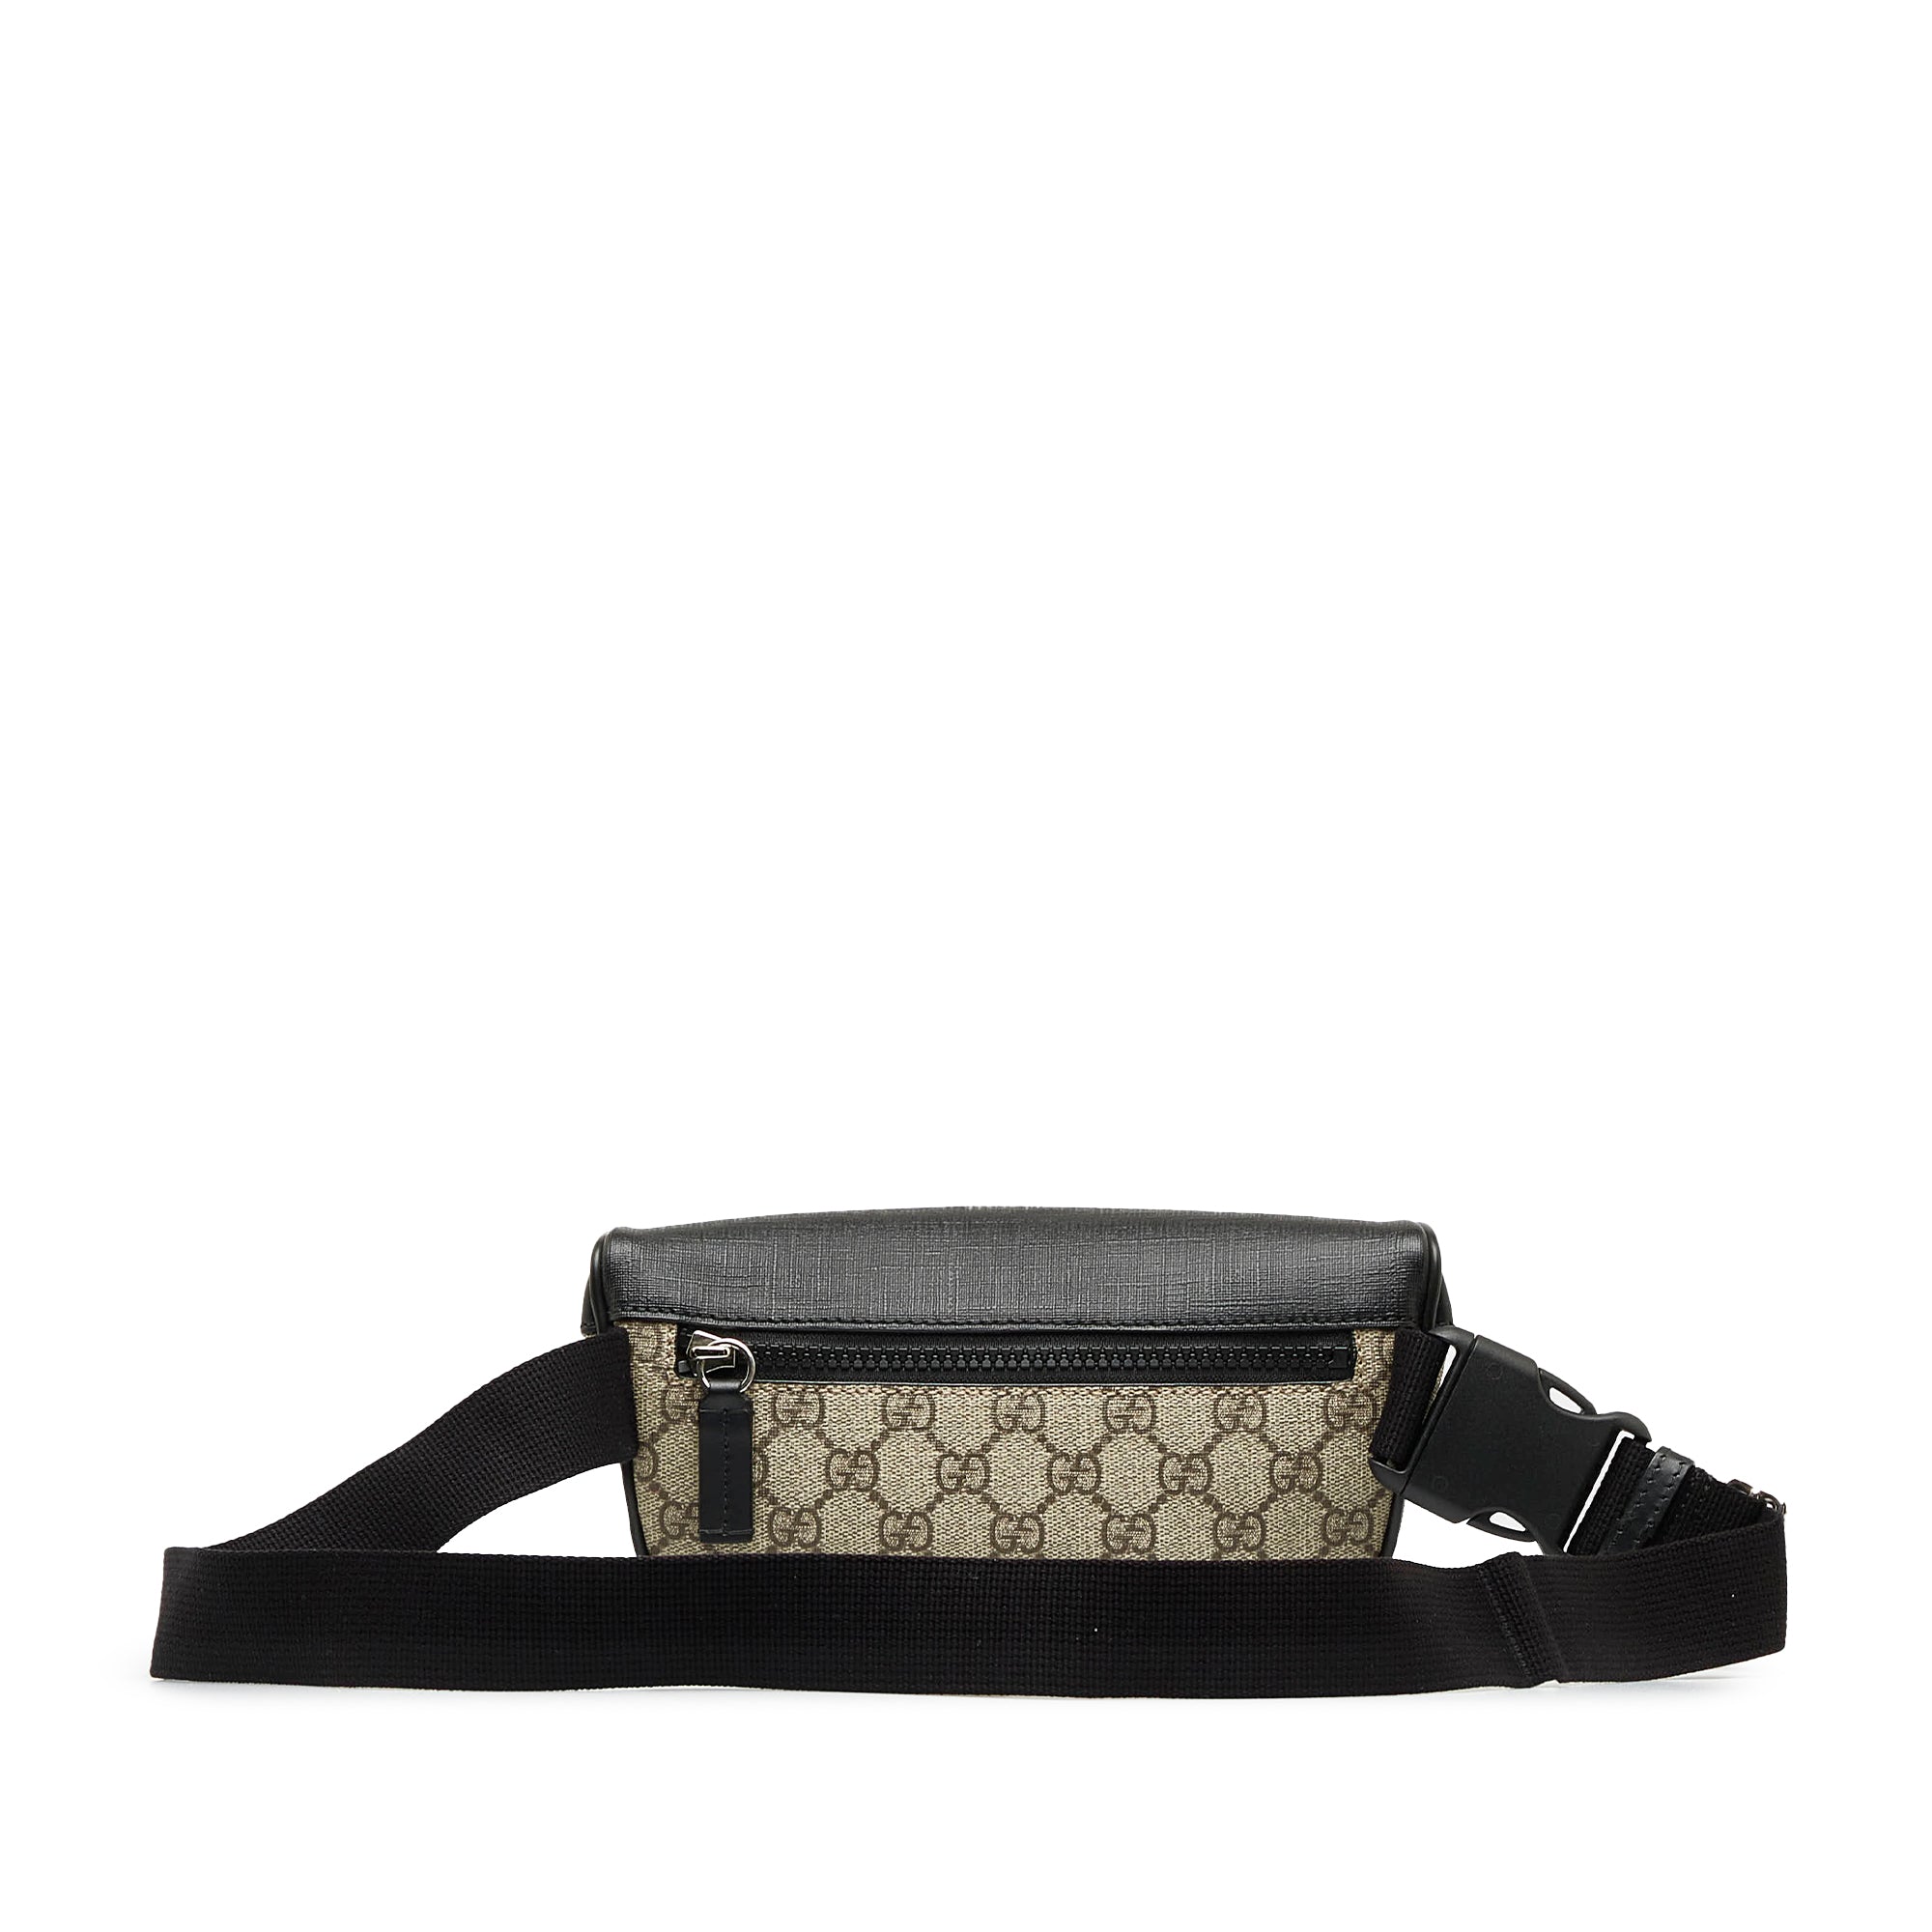 Gucci - GG-Logo Coated-Canvas Belt Bag - Mens - Black for Men